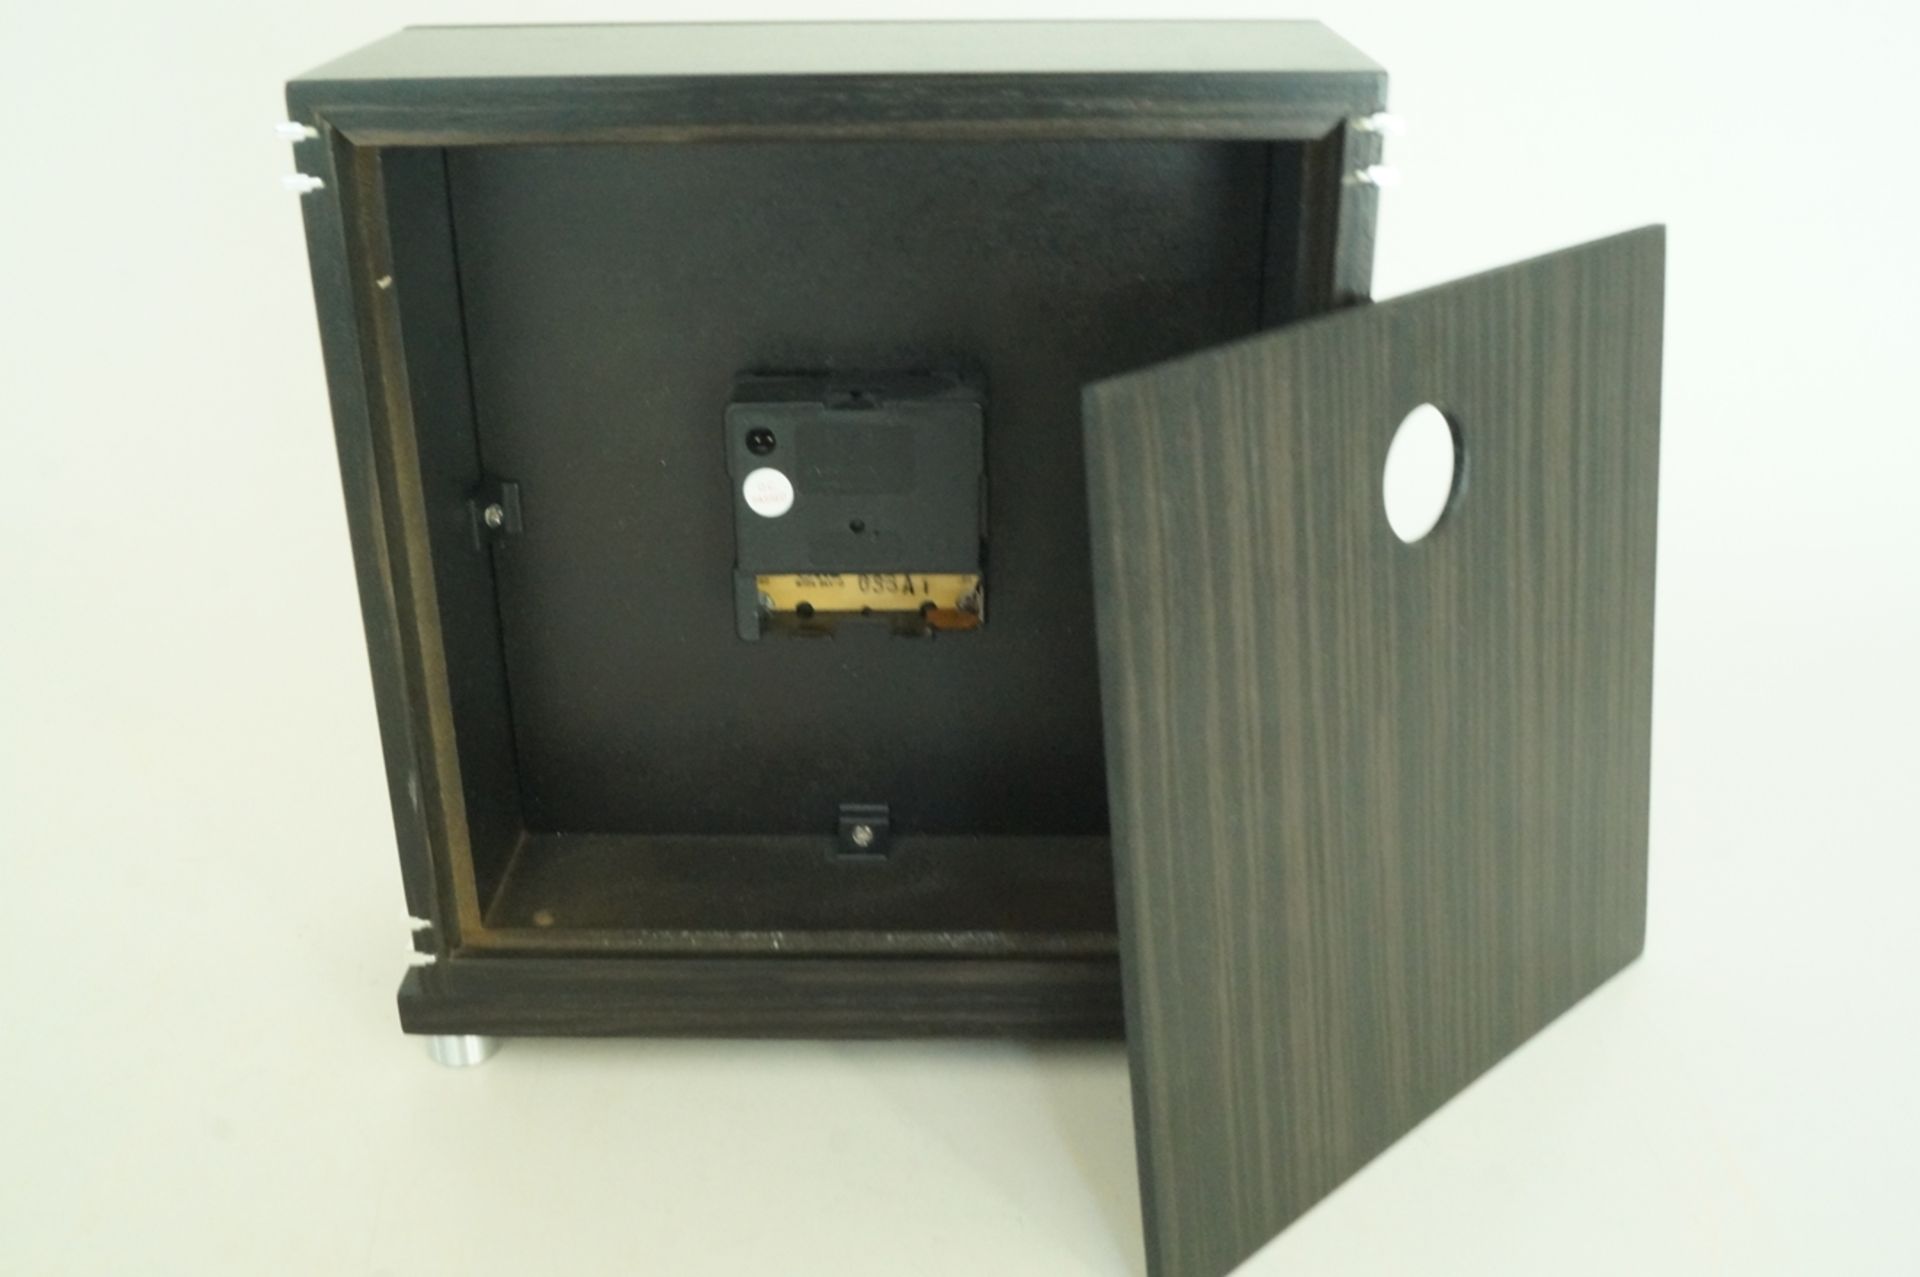 Neuzeitliche Funkuhr mit Quarzwerk im Stil des Art Deco; Hersteller: AMS. - Uhrenfabrik, Furtwangen - Bild 4 aus 4